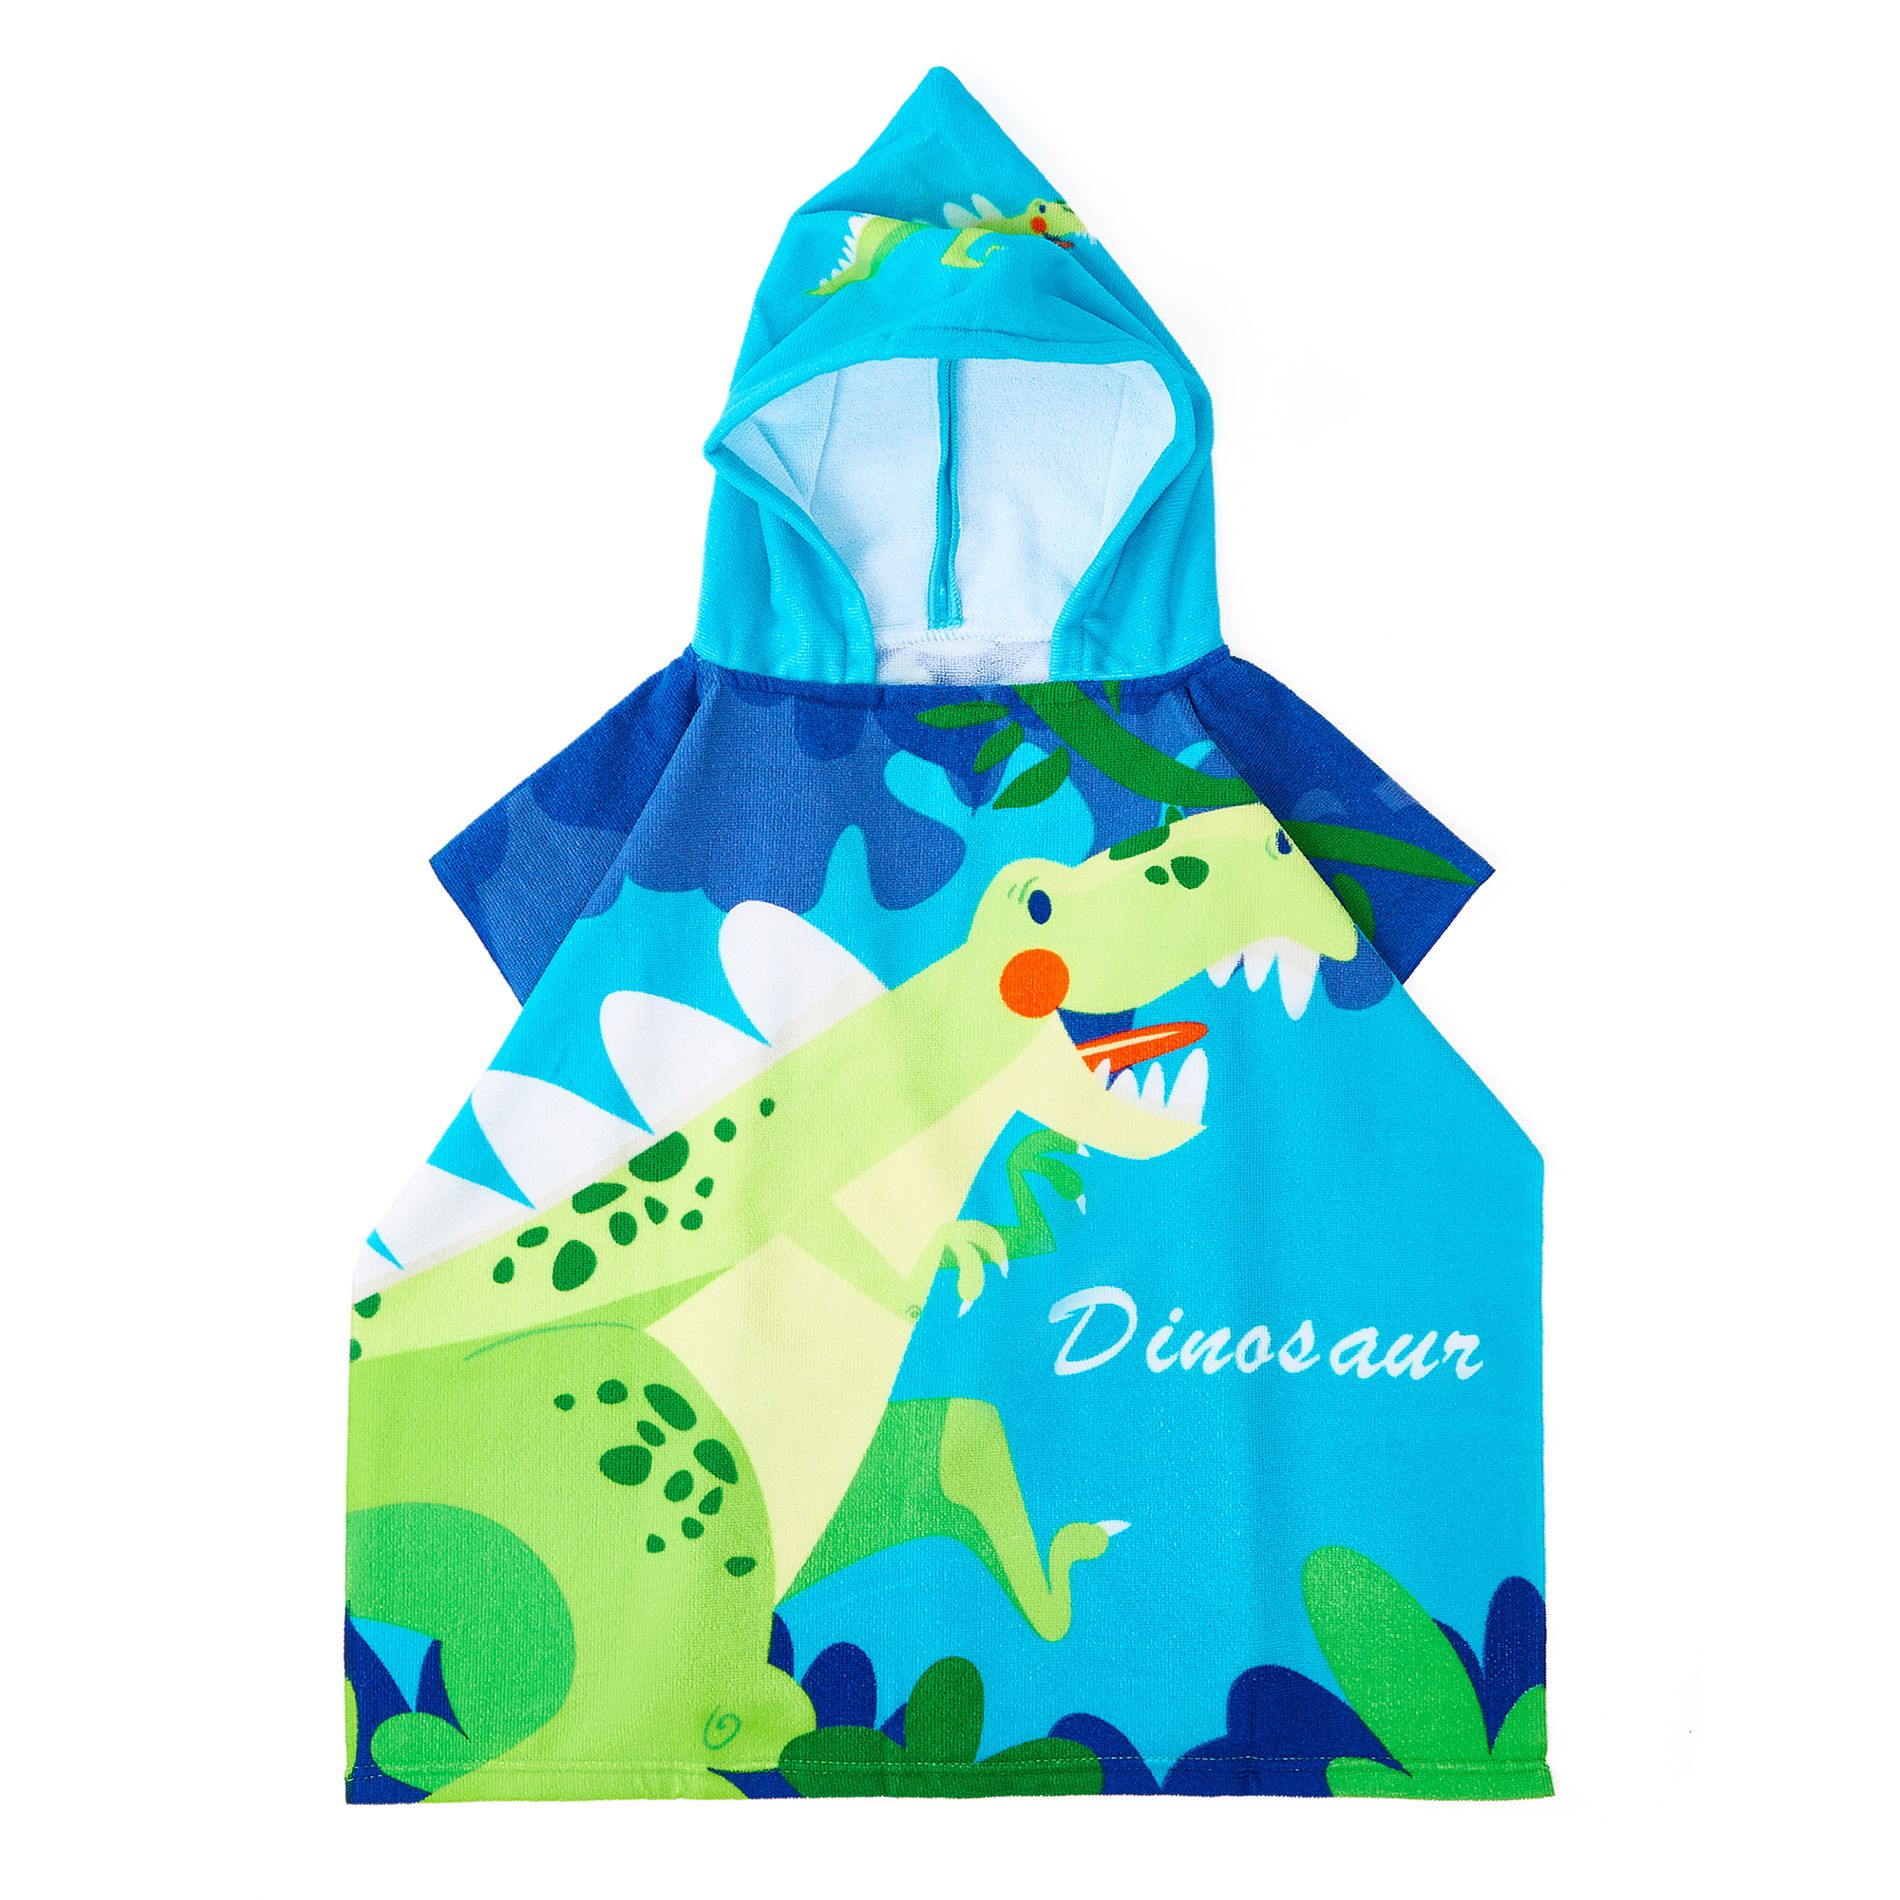 Adorable Serviette De Bain Cape à Motifs De Dinosaures Pour Les Enfants Jusqu’à 5 Ans